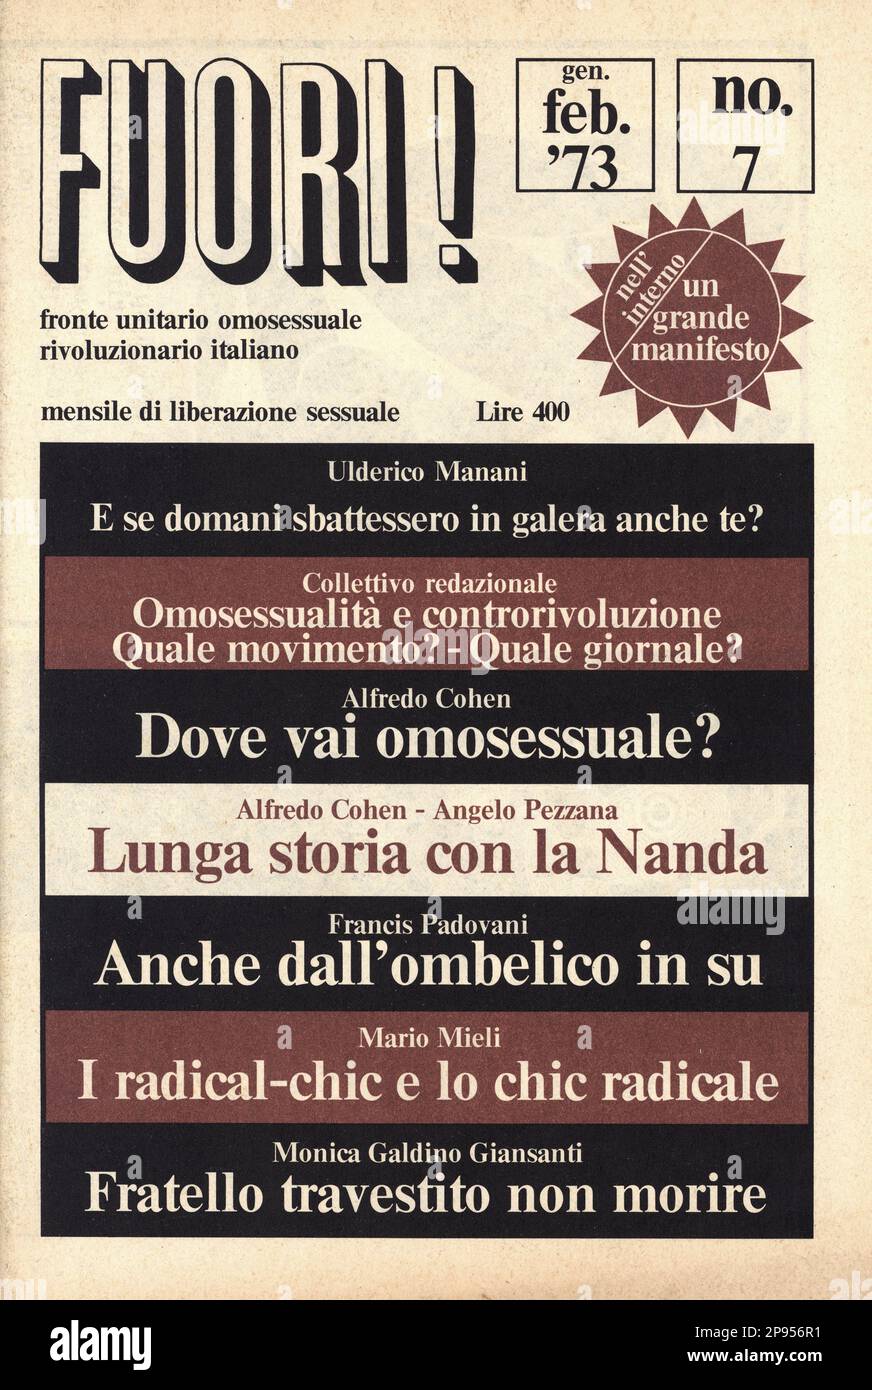 1973 , Turin , ITALIEN : das Titelblatt des ersten italienischen politischen Schwulenmagazins FUORI . ( Fronte Unitario Omosessuale Rivoluzionario Italiano ) unter der Leitung von Marcello Baraghini ( Herausgeber von stampa alternativa) , gegründet von MARIO MIELI und ANGELO PEZZANA , veröffentlicht in Turin . - HOMOSEXUELLE BEFREIUNGSFRONT - omossuale - omosessualità - LGBT - homosexuell - Homosex - Homosexualität - giornale - rivista - Cover - Copertina - POLITICA - POLITIC -- Archivio GBB Stockfoto